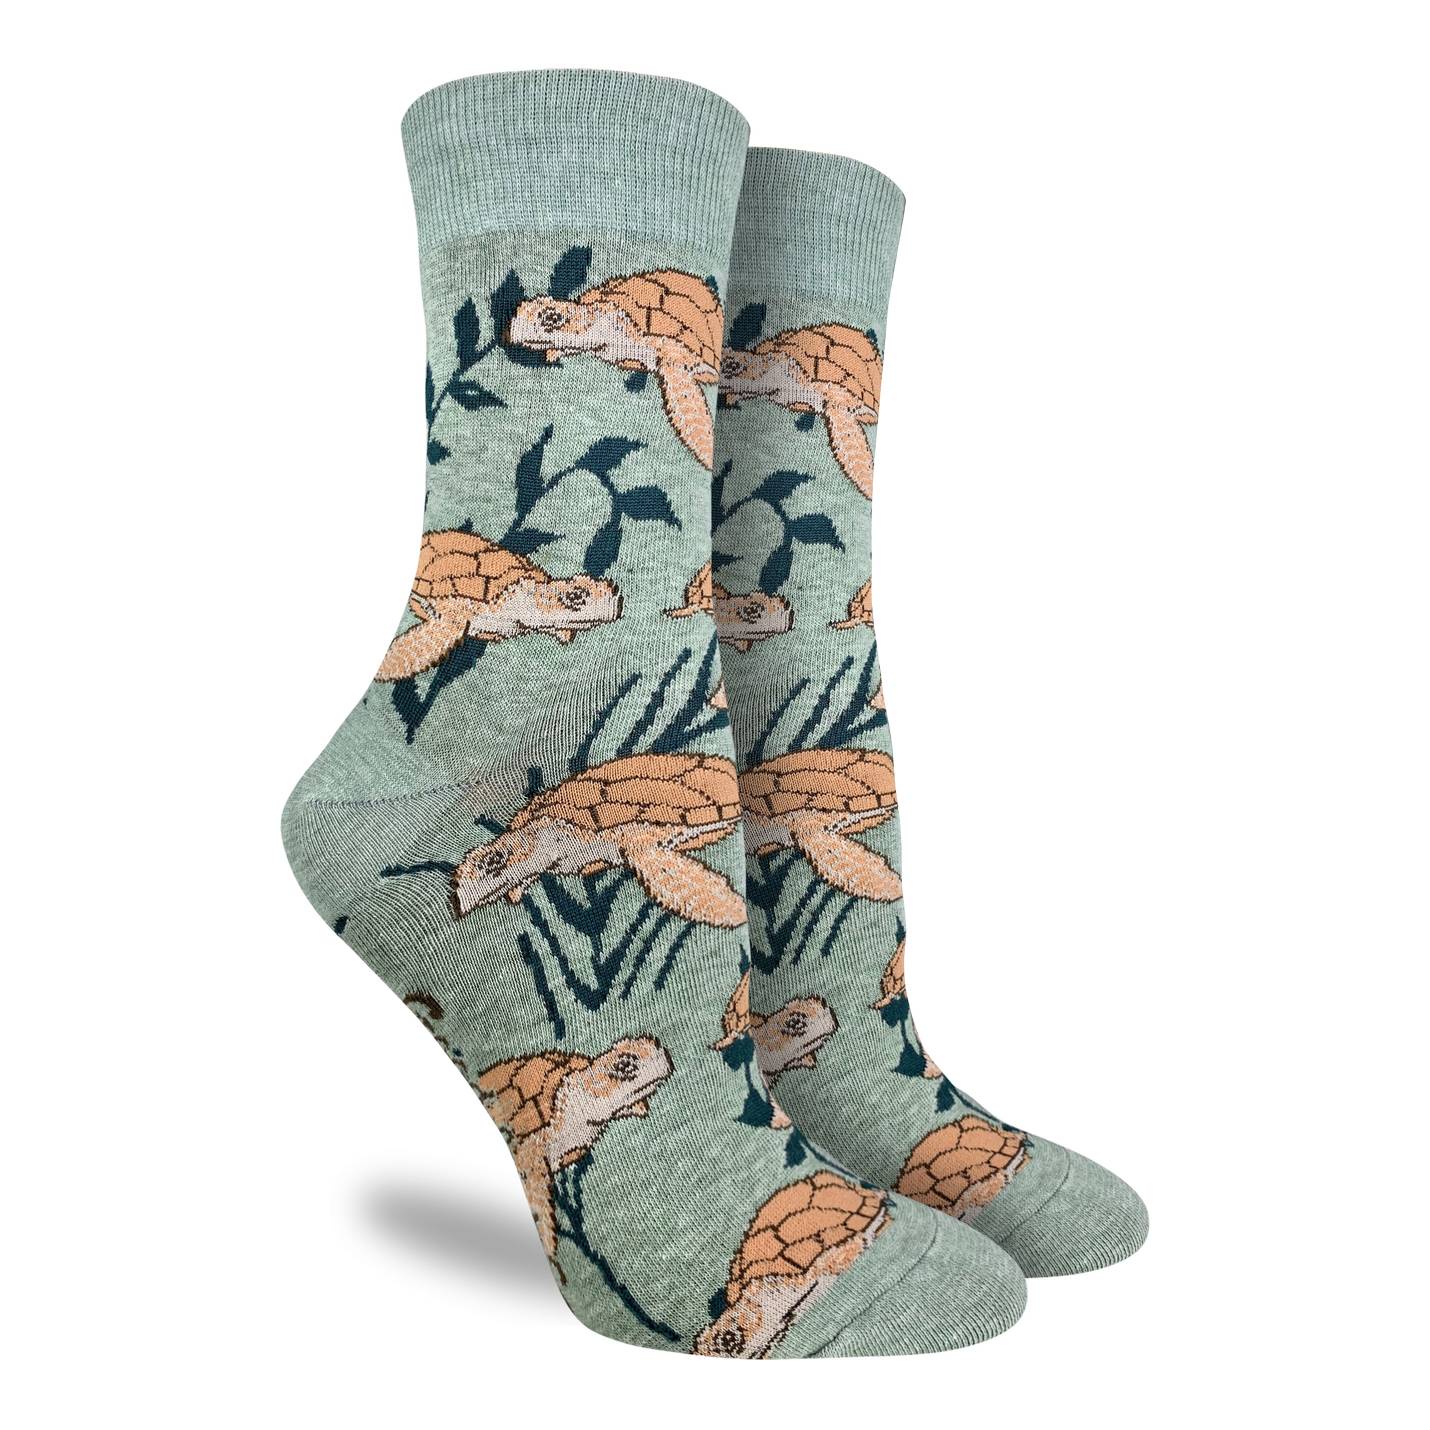 Good Luck Sock - Women's Sea Turtle Socks